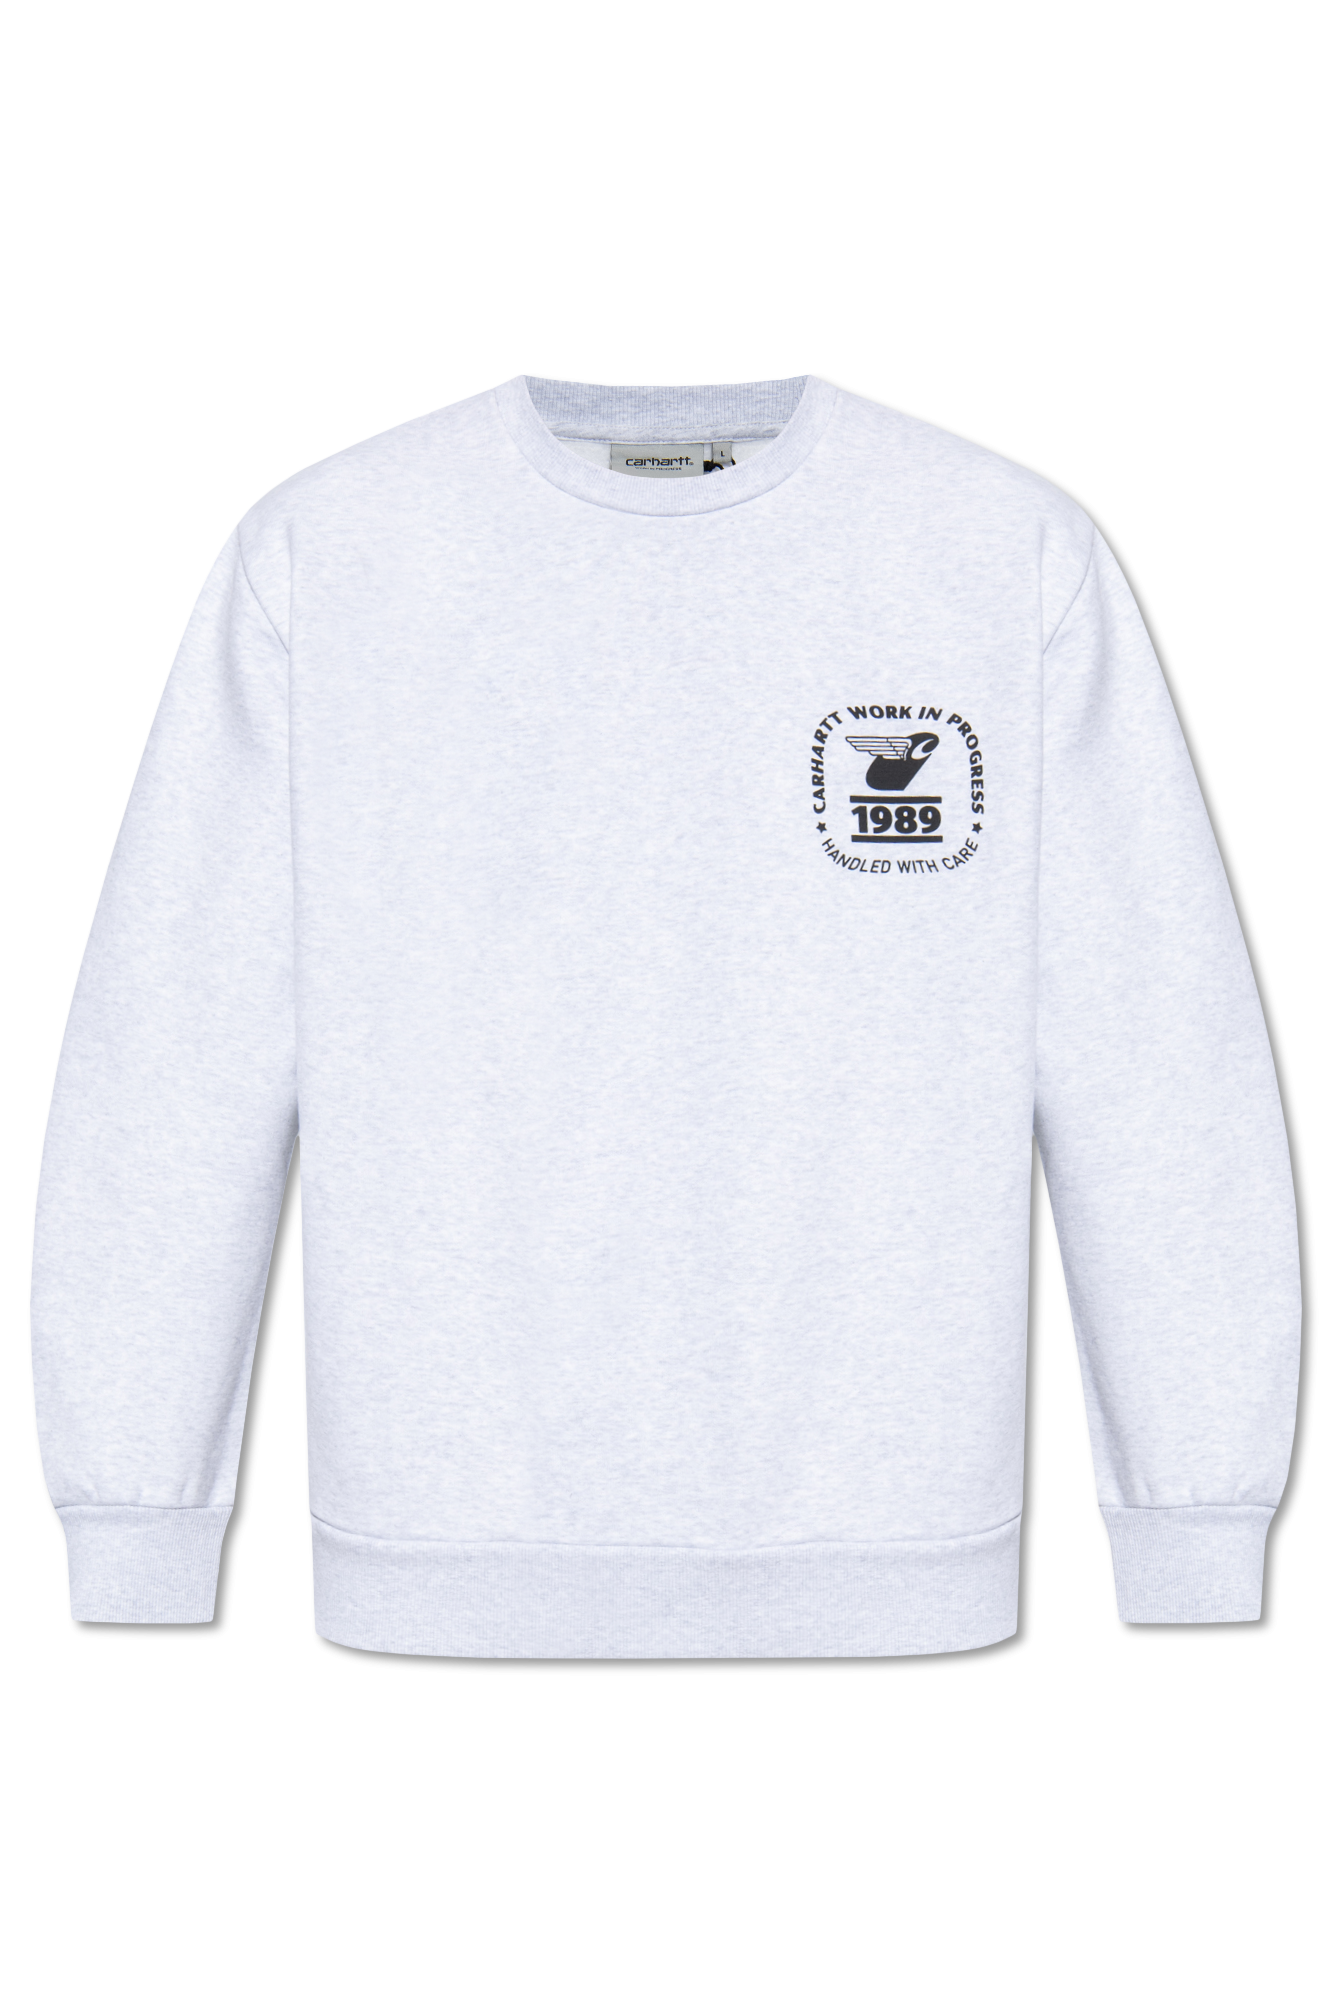 Carhartt WIP Printed sweatshirt